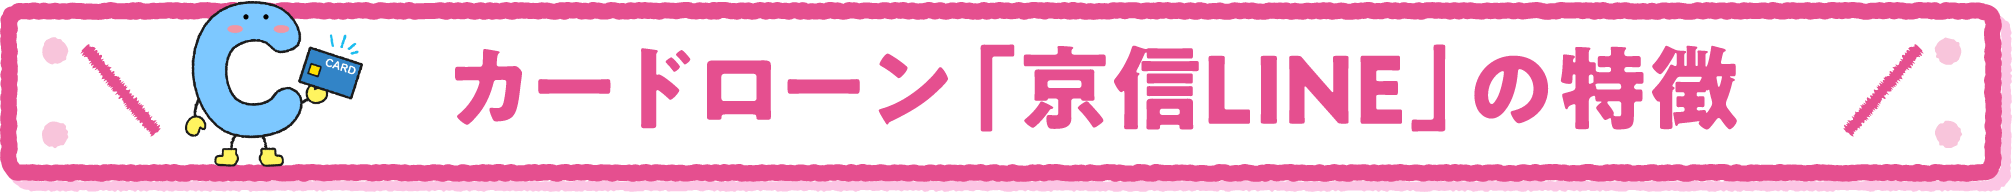 カードローン「京信LINE」の特徴